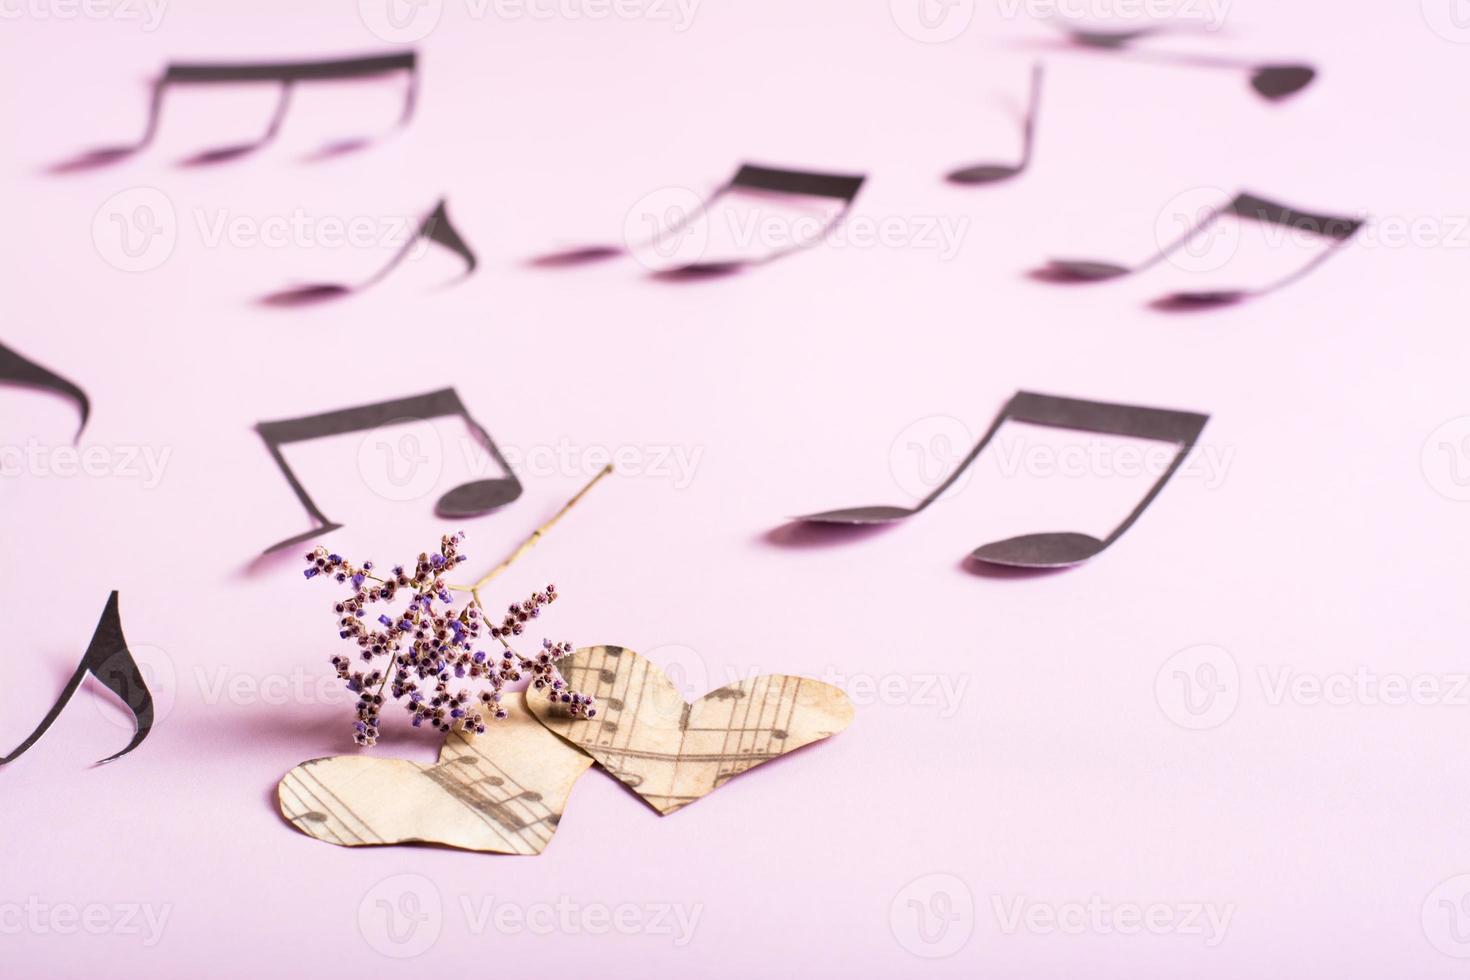 das konzept der liebe zur musik. zwei papierherzen, trockene blumen und notizen herum auf einem rosa hintergrund foto